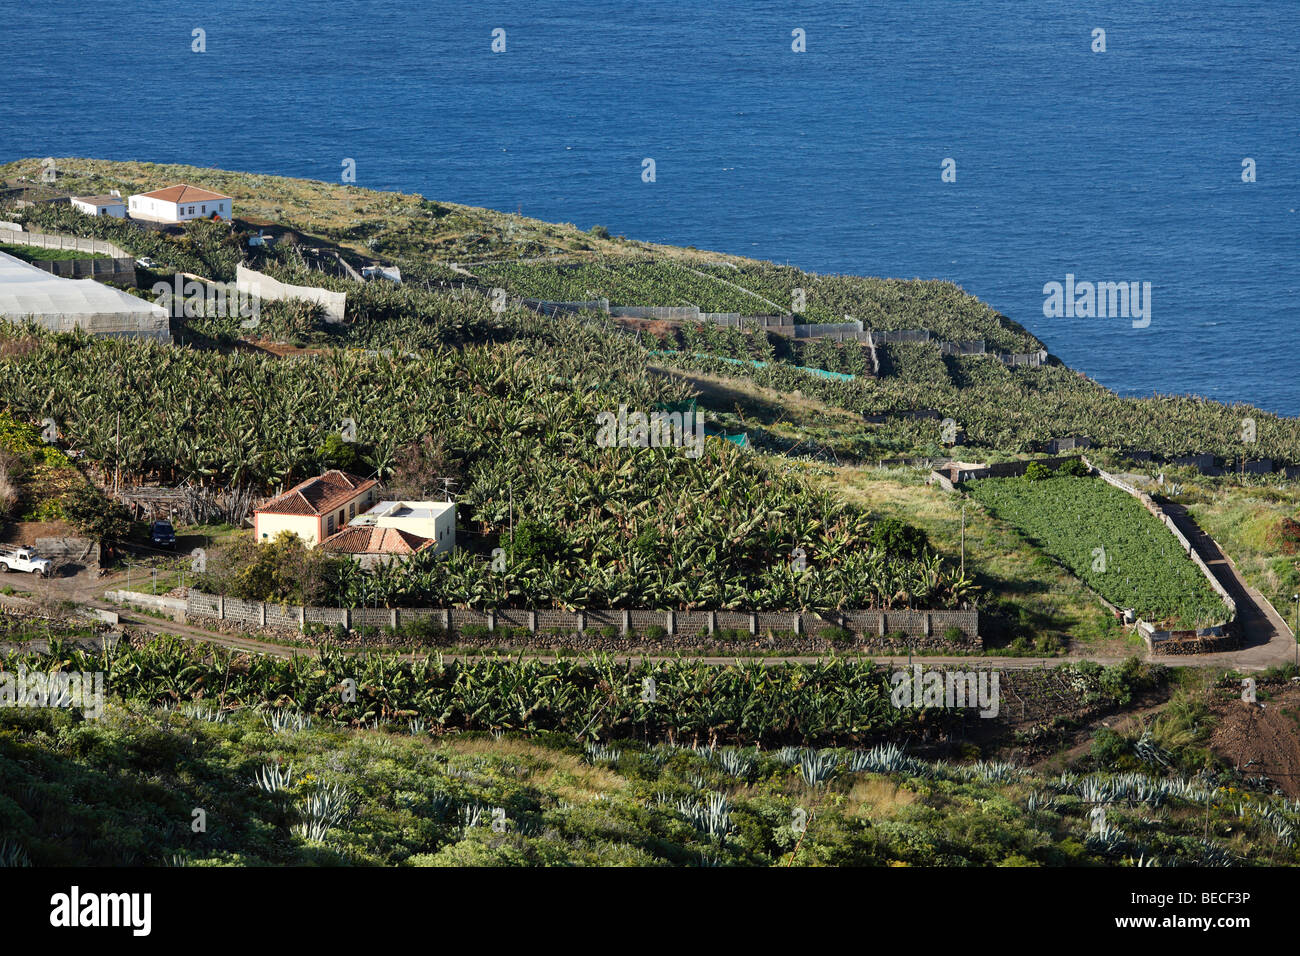 Banana plantations near Puntallana, La Palma, Canary Islands, Spain Stock Photo